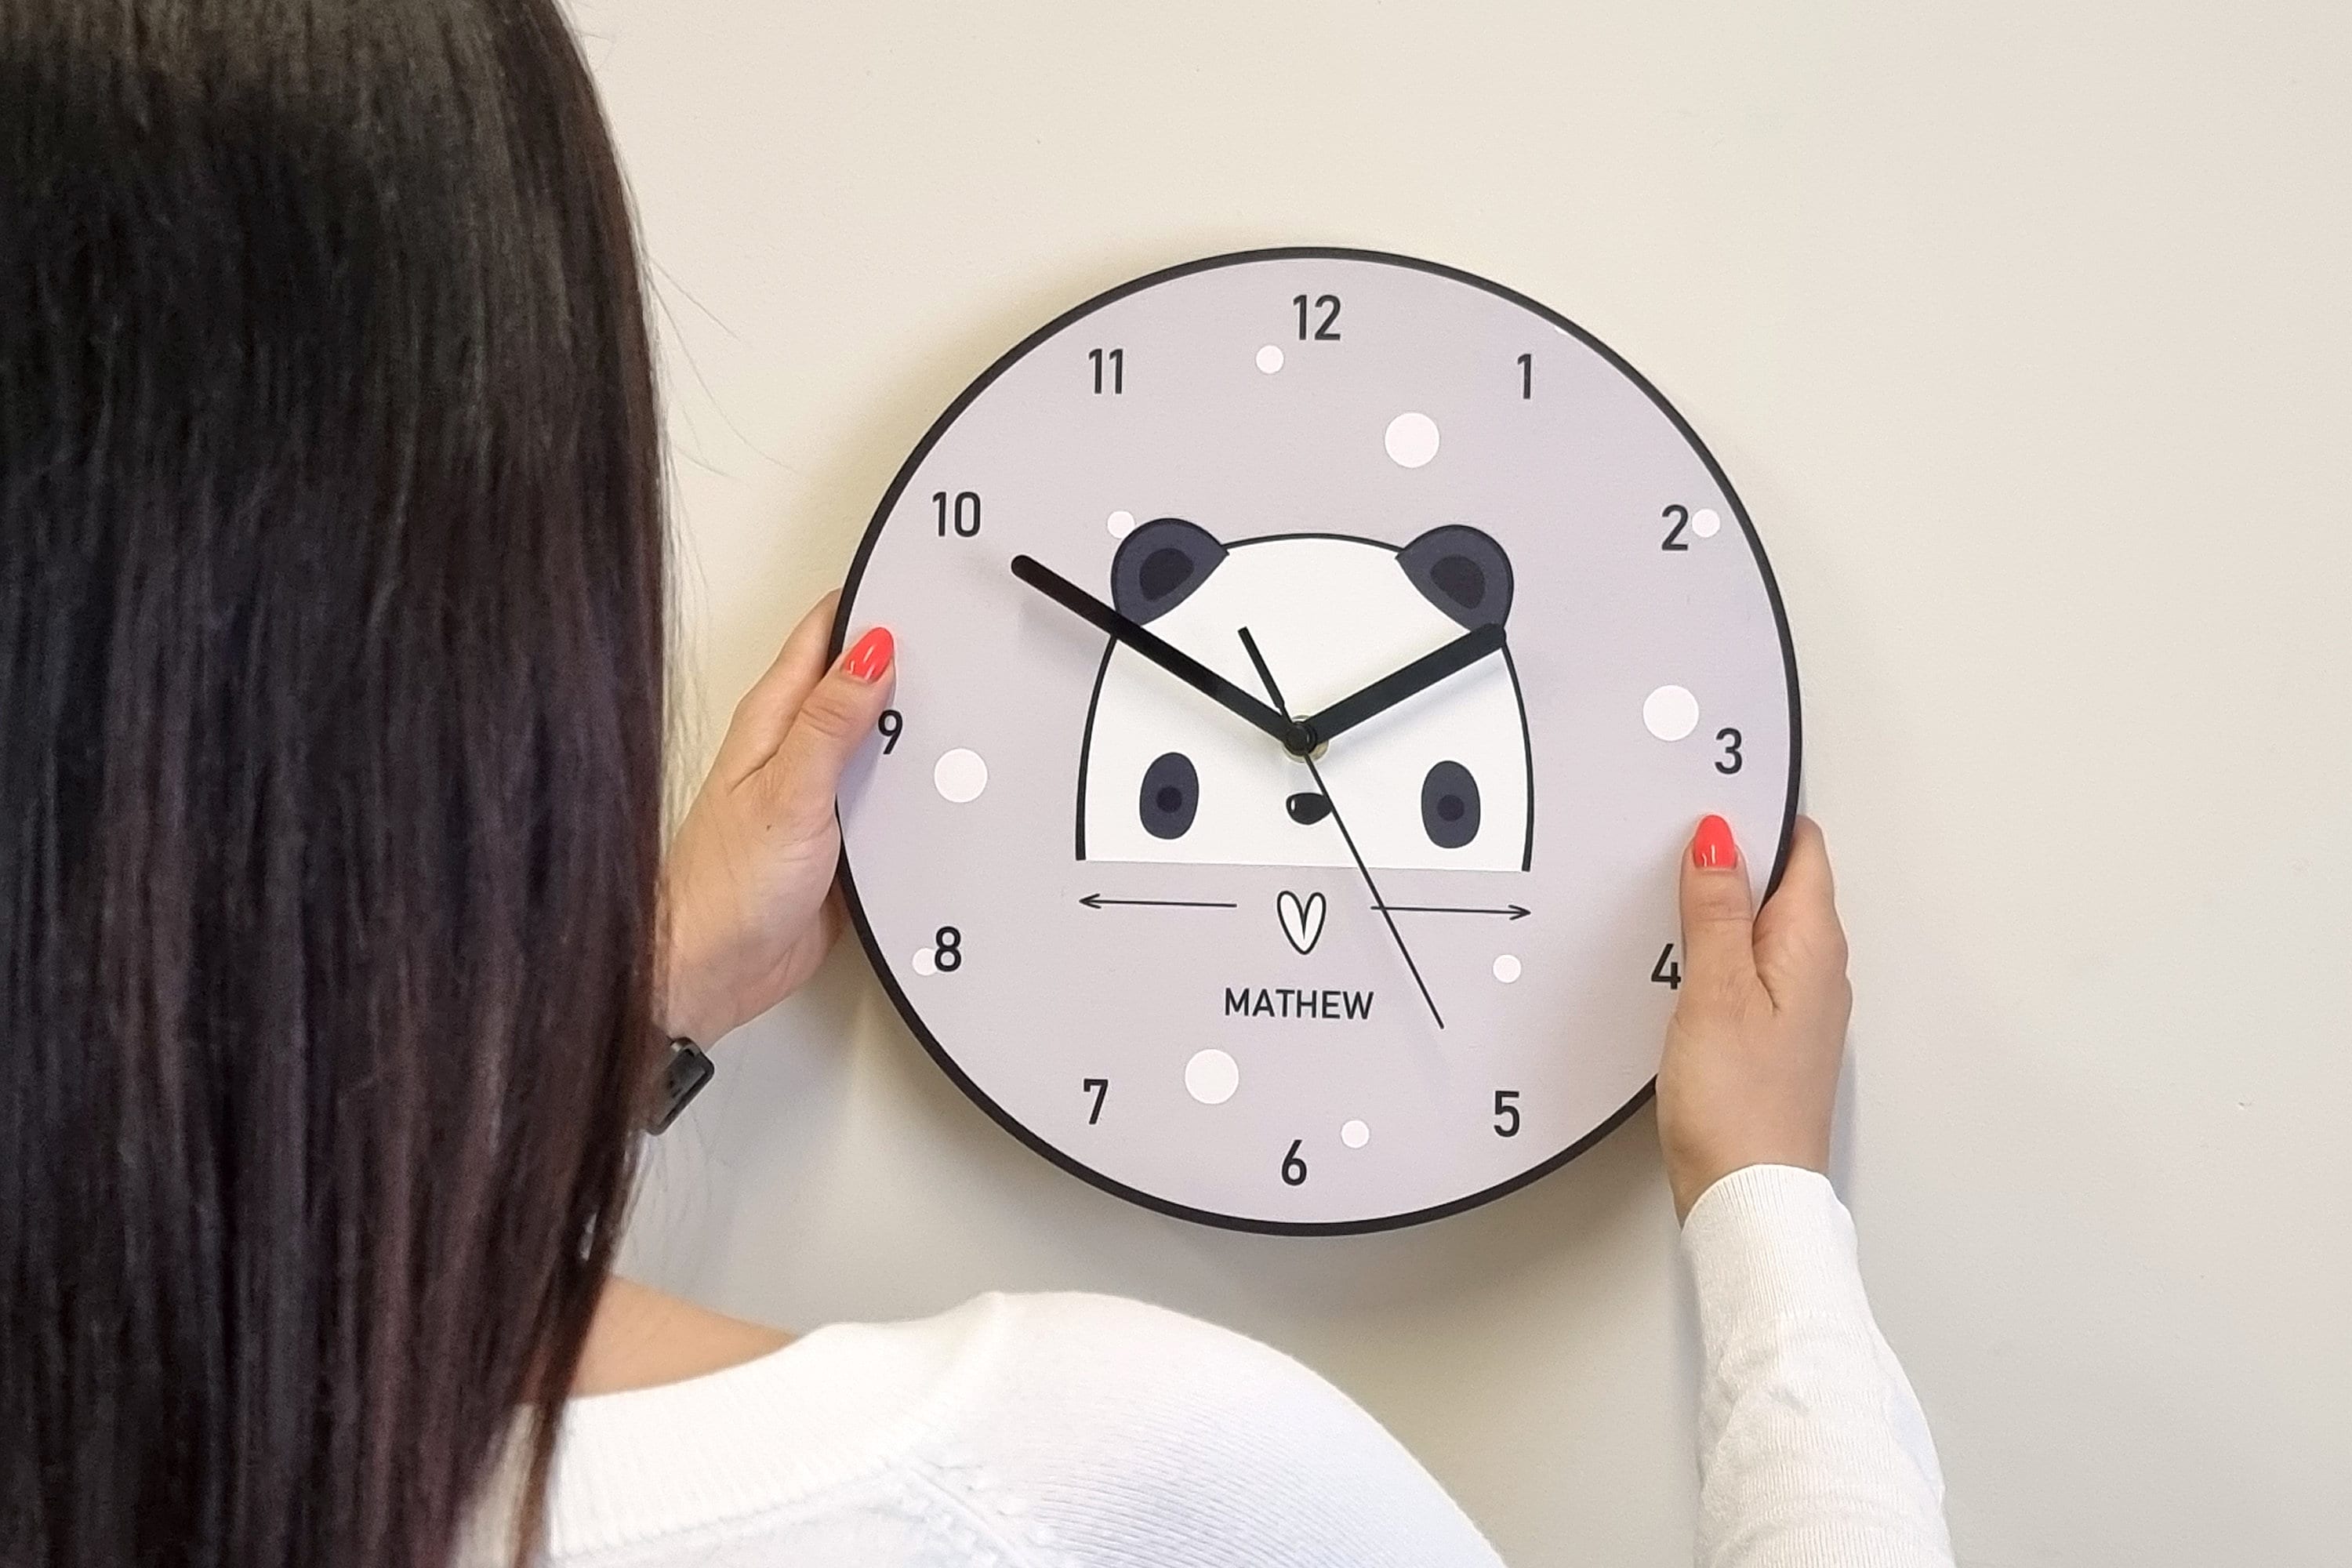 OMING Despertador Niños Animal Panda Alarma Reloj Reloj Dormitorio  Estudiante Escritorio Creativo Reloj Desk Reembolso Péndulo Adornos de  Escritorio